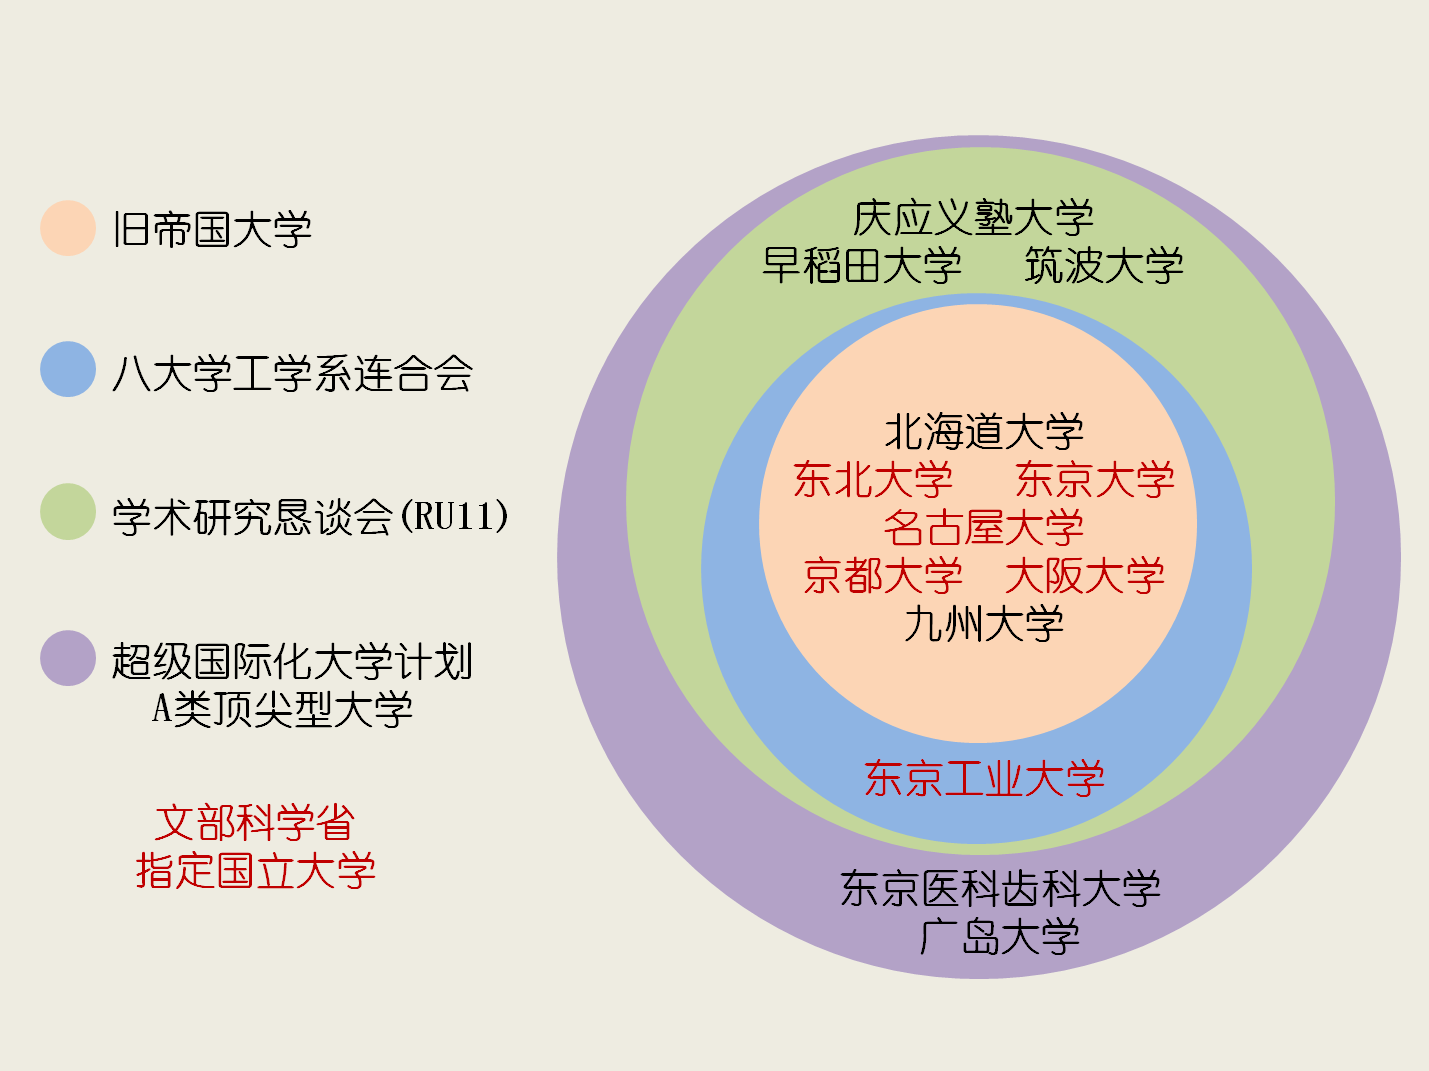 日本主要高校聯盟及組織的關係